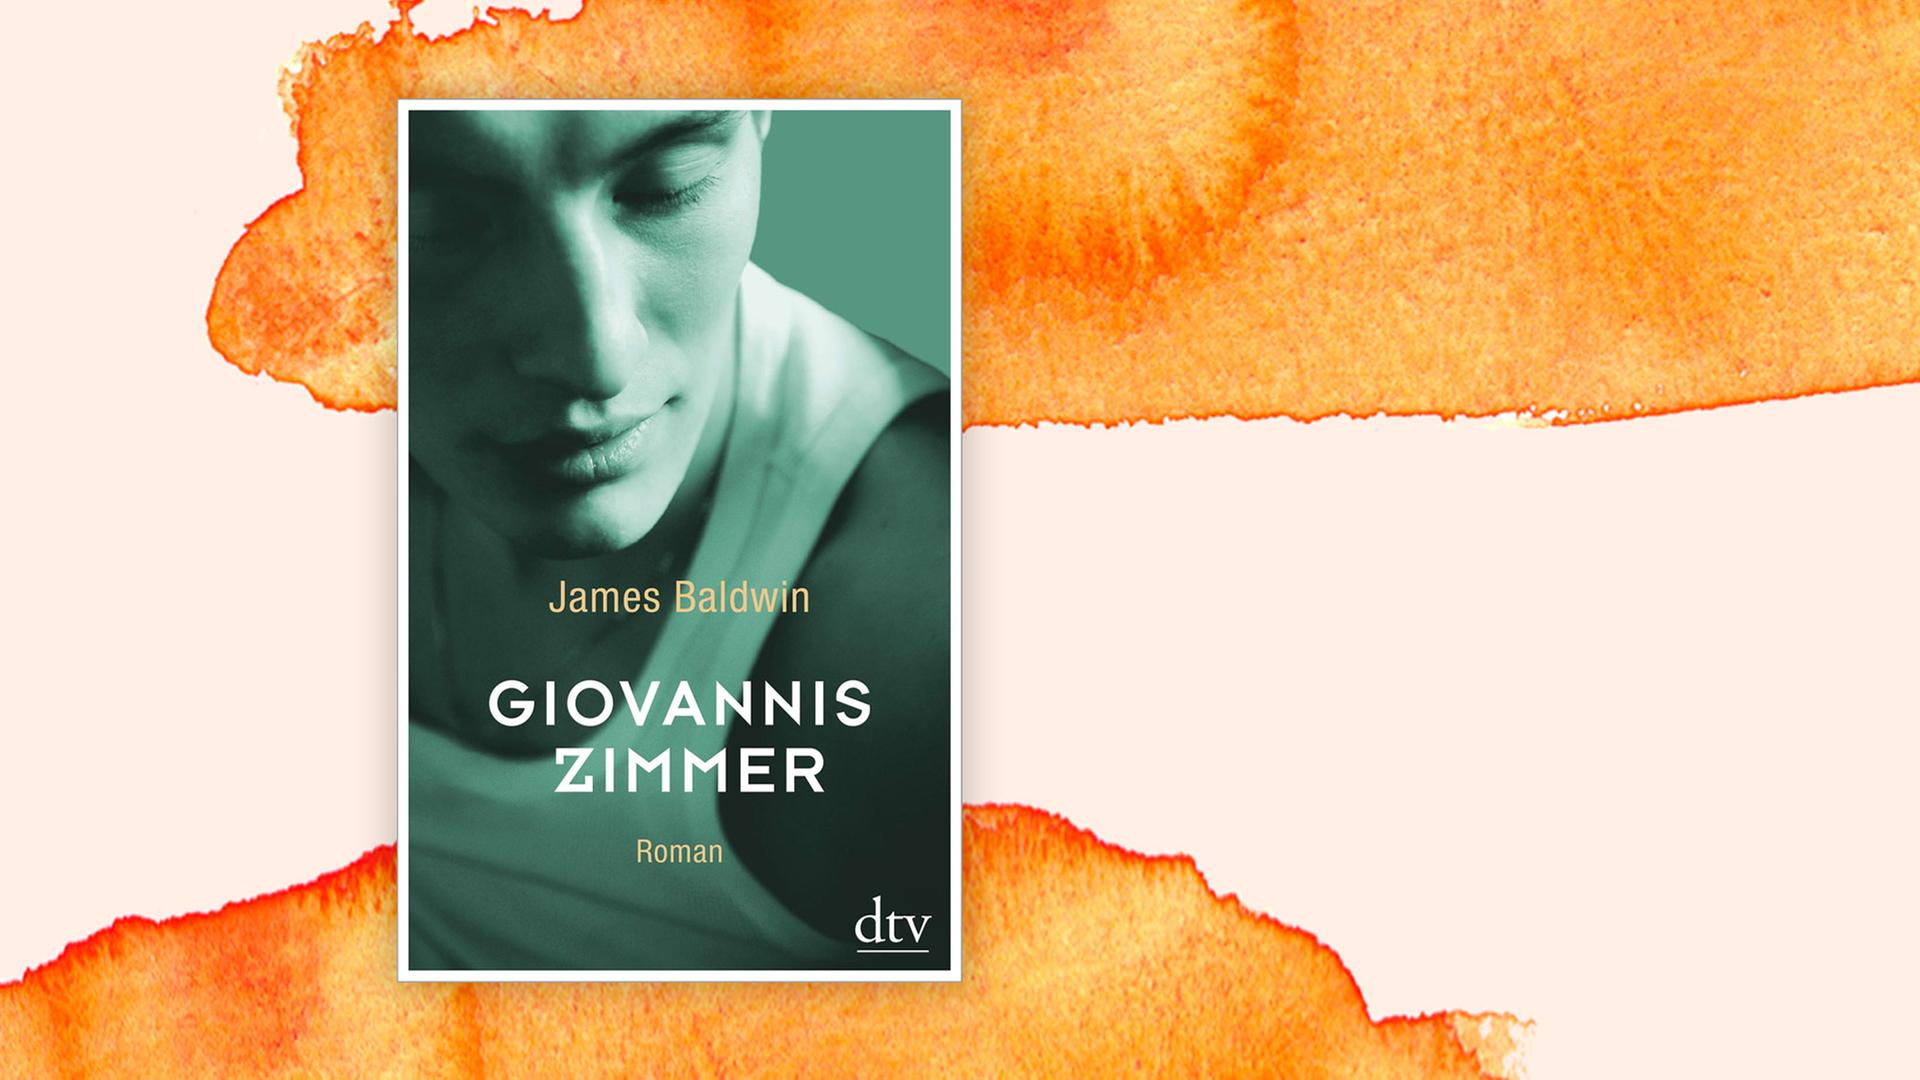 Buchcover "Giovannis Zimmer" von James Baldwin. Ein junger Mann in einem weißen Unterhemd guckt nach unten.